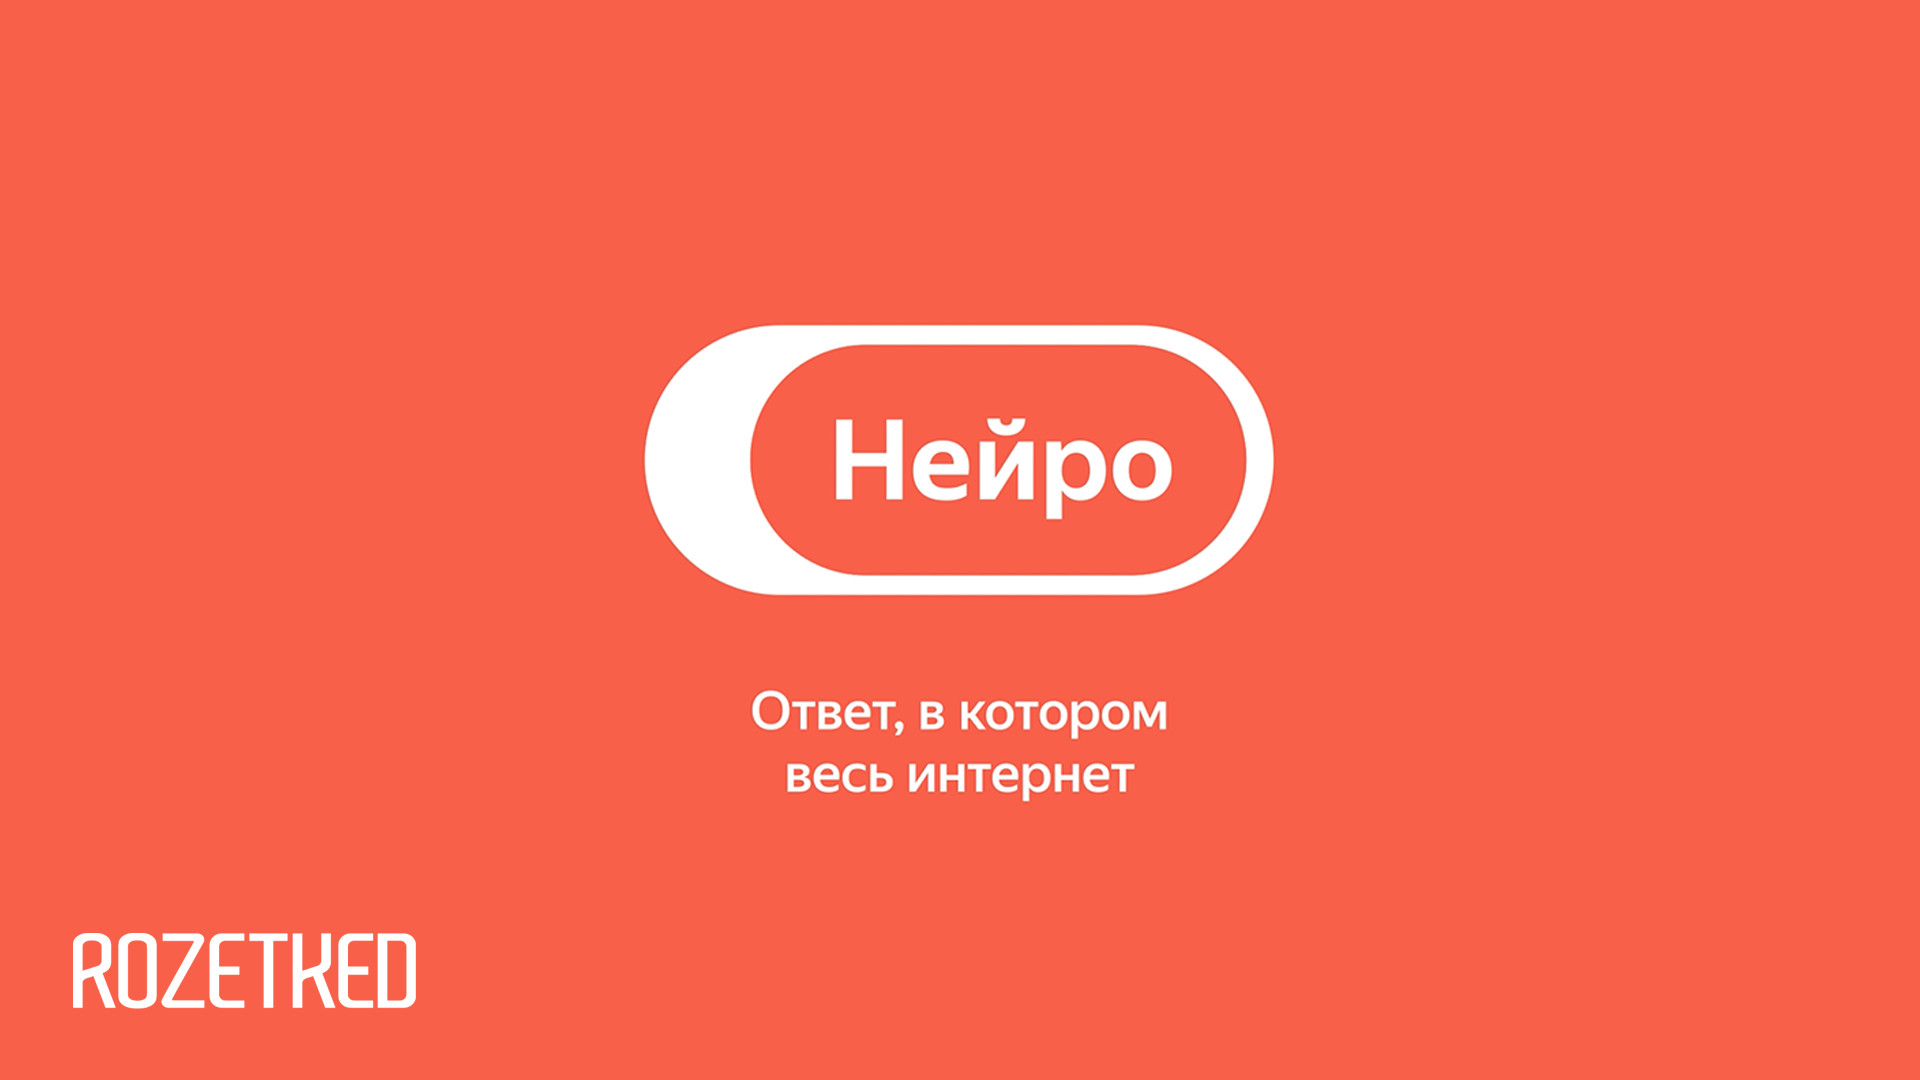 «Яндекс» представил «Нейро» — продвинутый поиск в интернете при помощи нейросетей